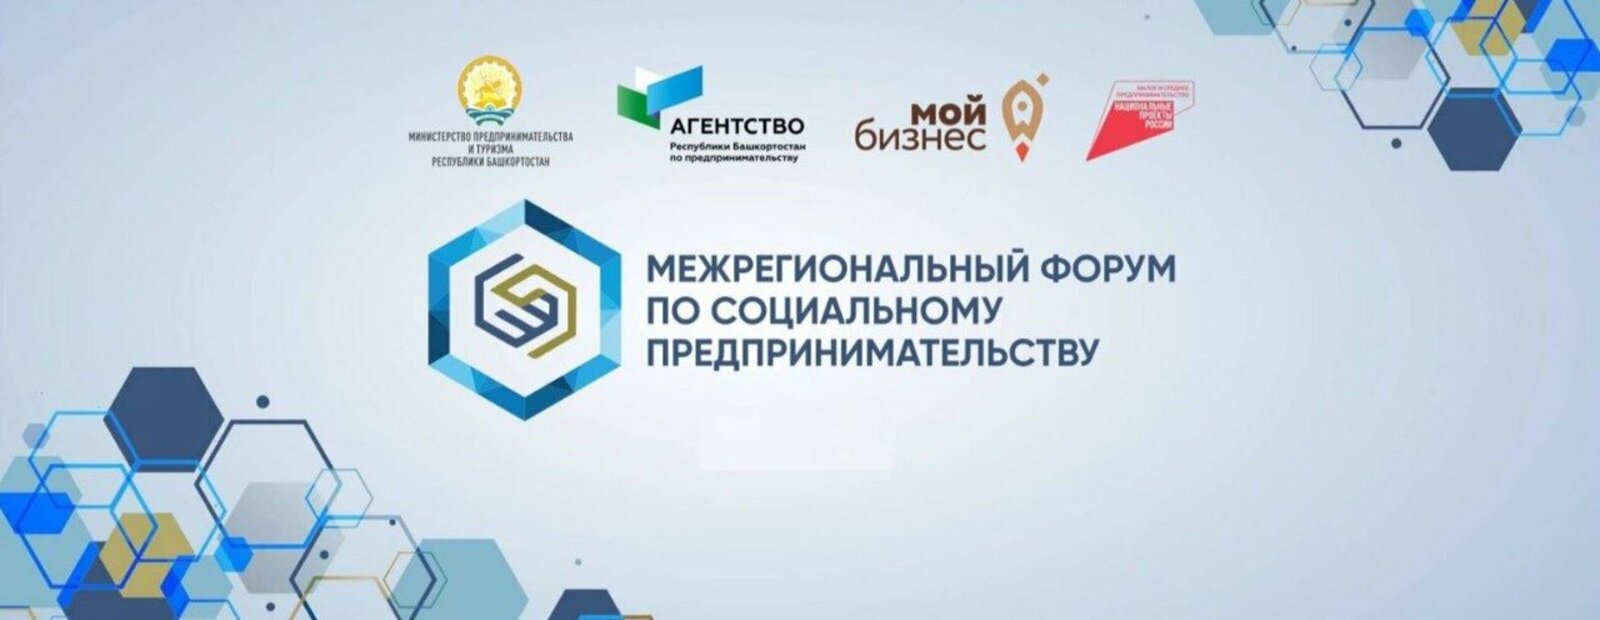 В Башкортостане пройдет Межрегиональный форум по социальному предпринимательству